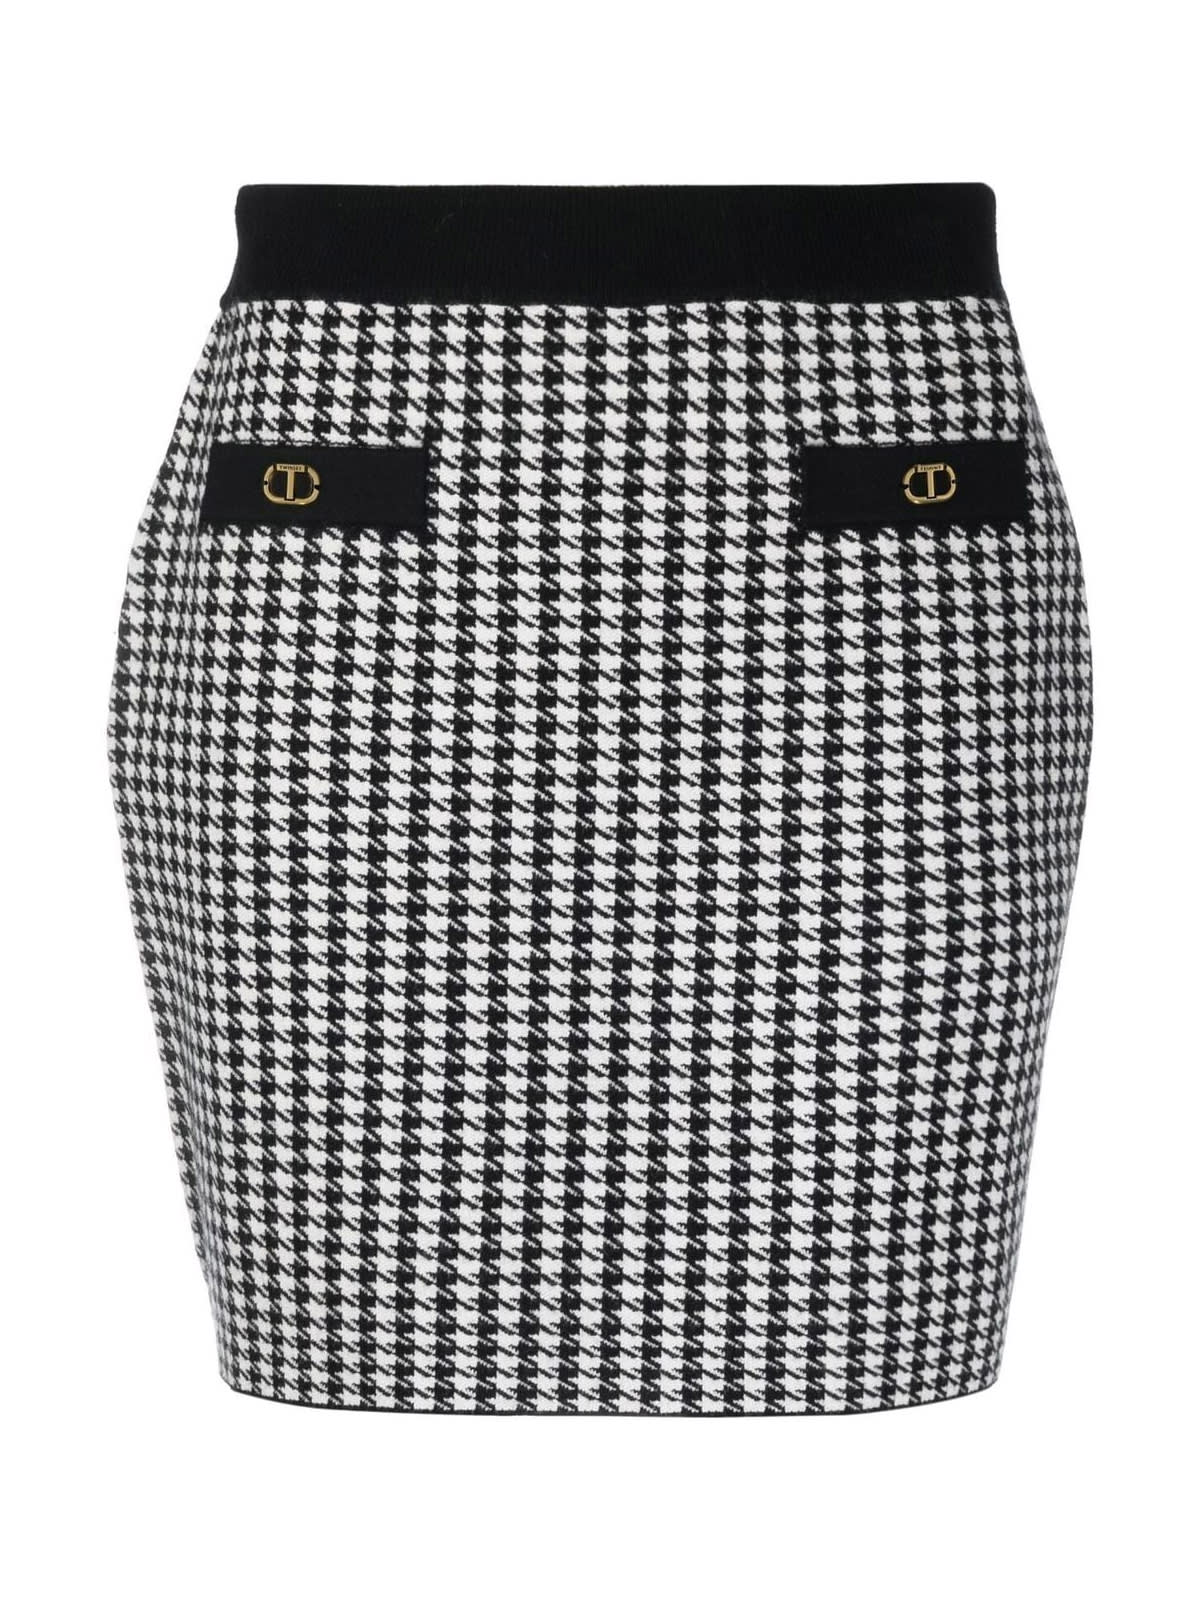 TwinSet Pencil Mini Skirt